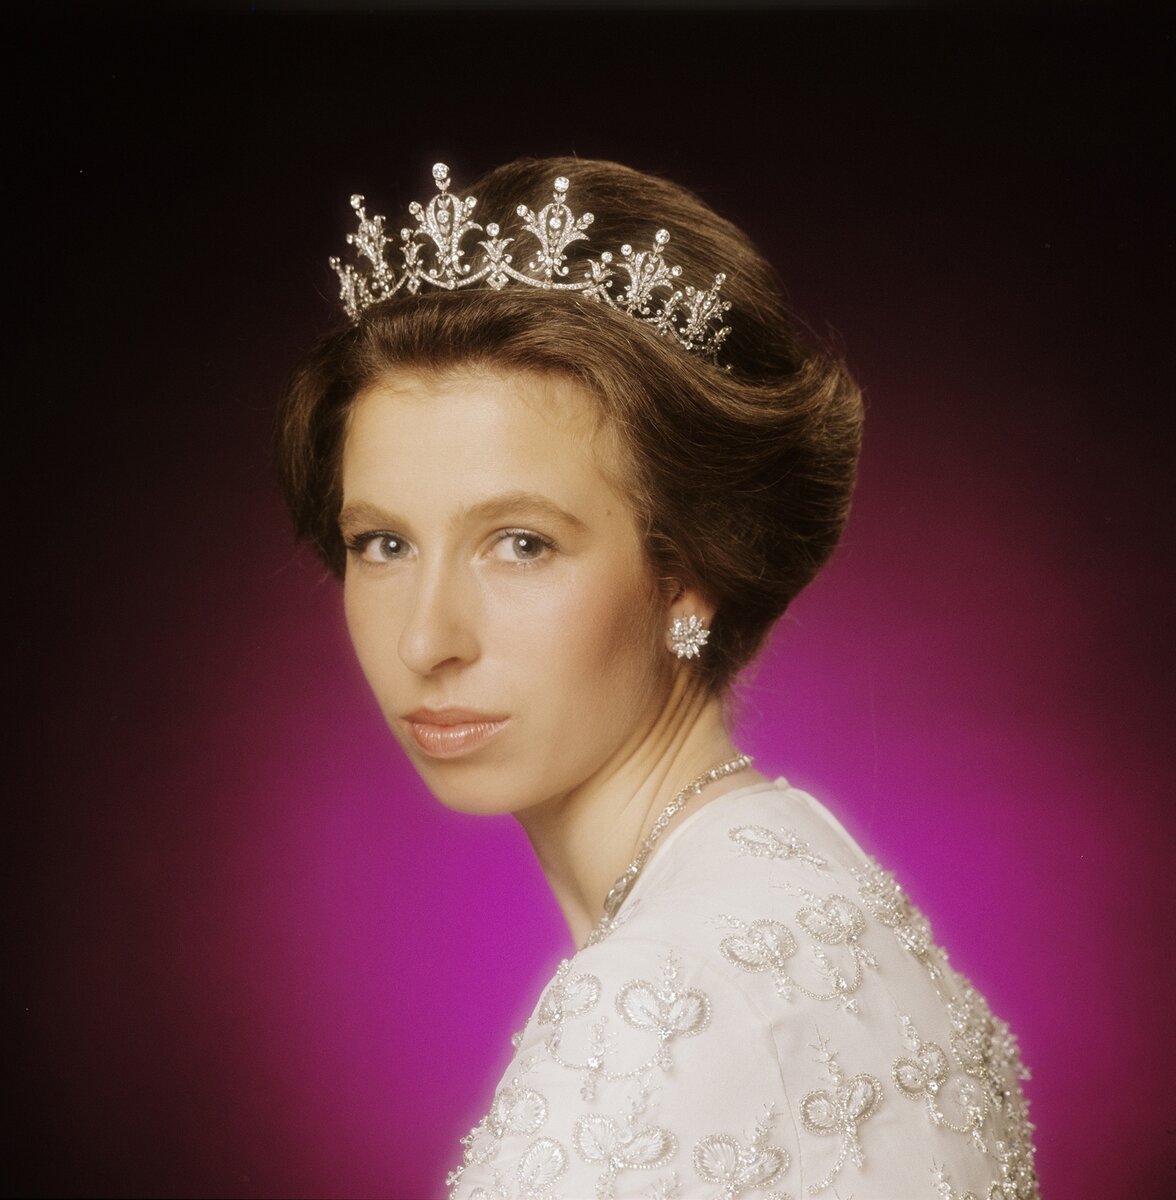    Королевская принцесса, истинная аристократка, трудоголик, но в тоже время скромный человек.-67